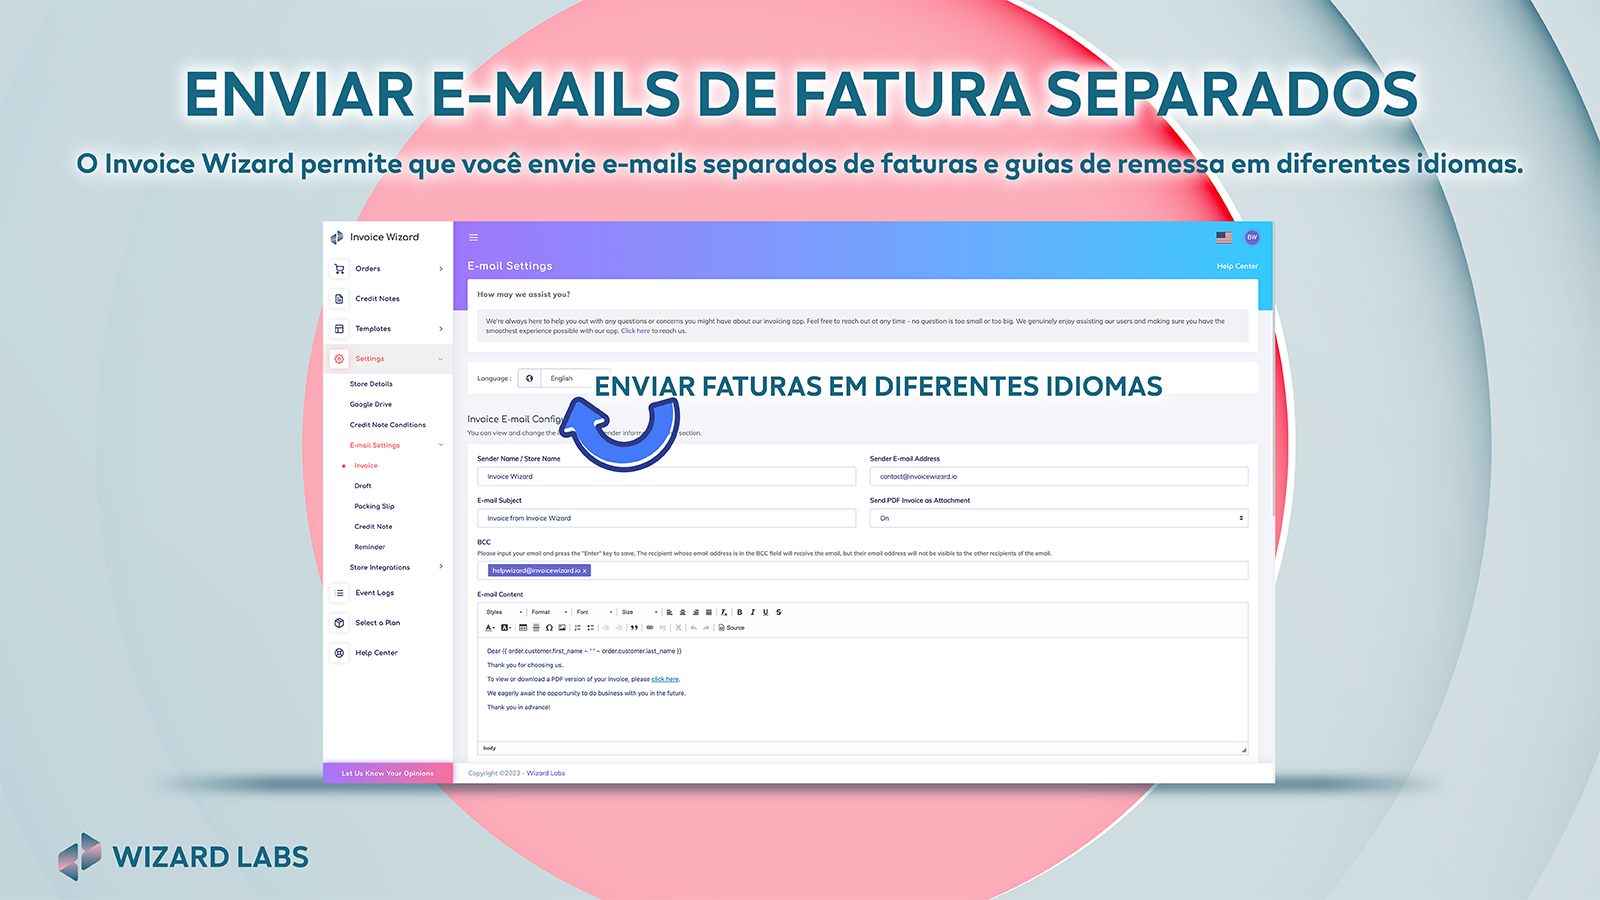 e-mails separados de fatura e entrega em diferentes idiomas